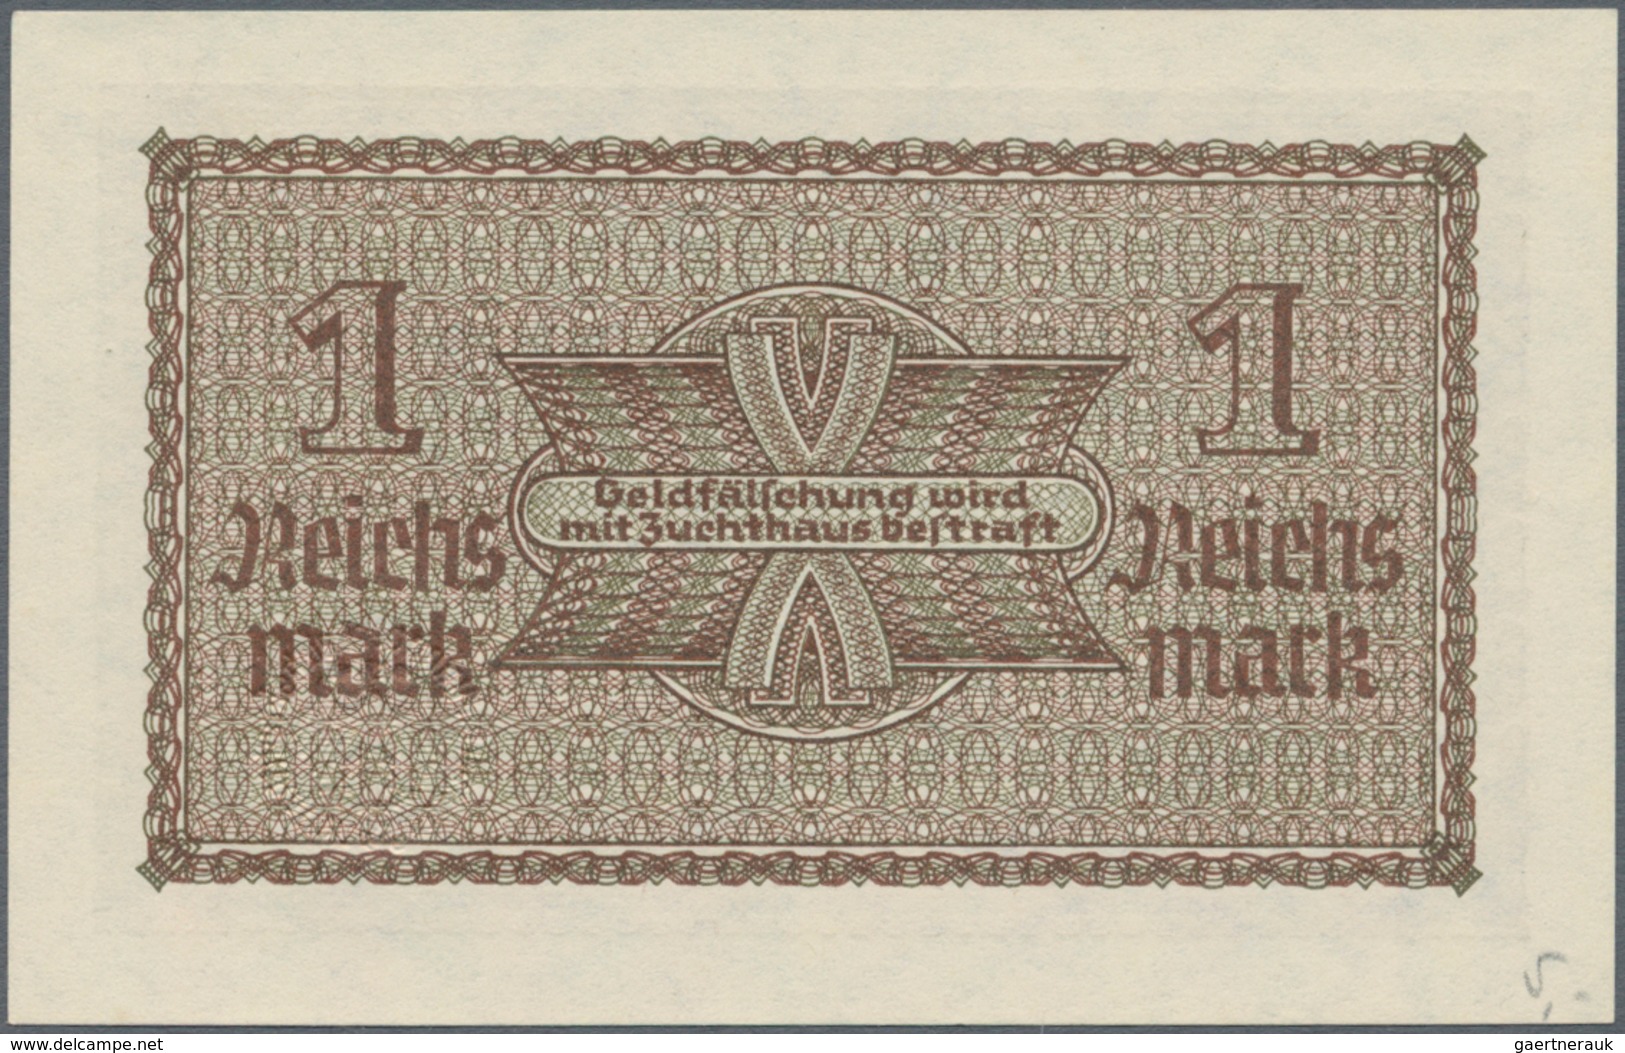 Deutschland - Konzentrations- und Kriegsgefangenenlager: Lot mit 9 Banknoten der Ausgaben der Reichs